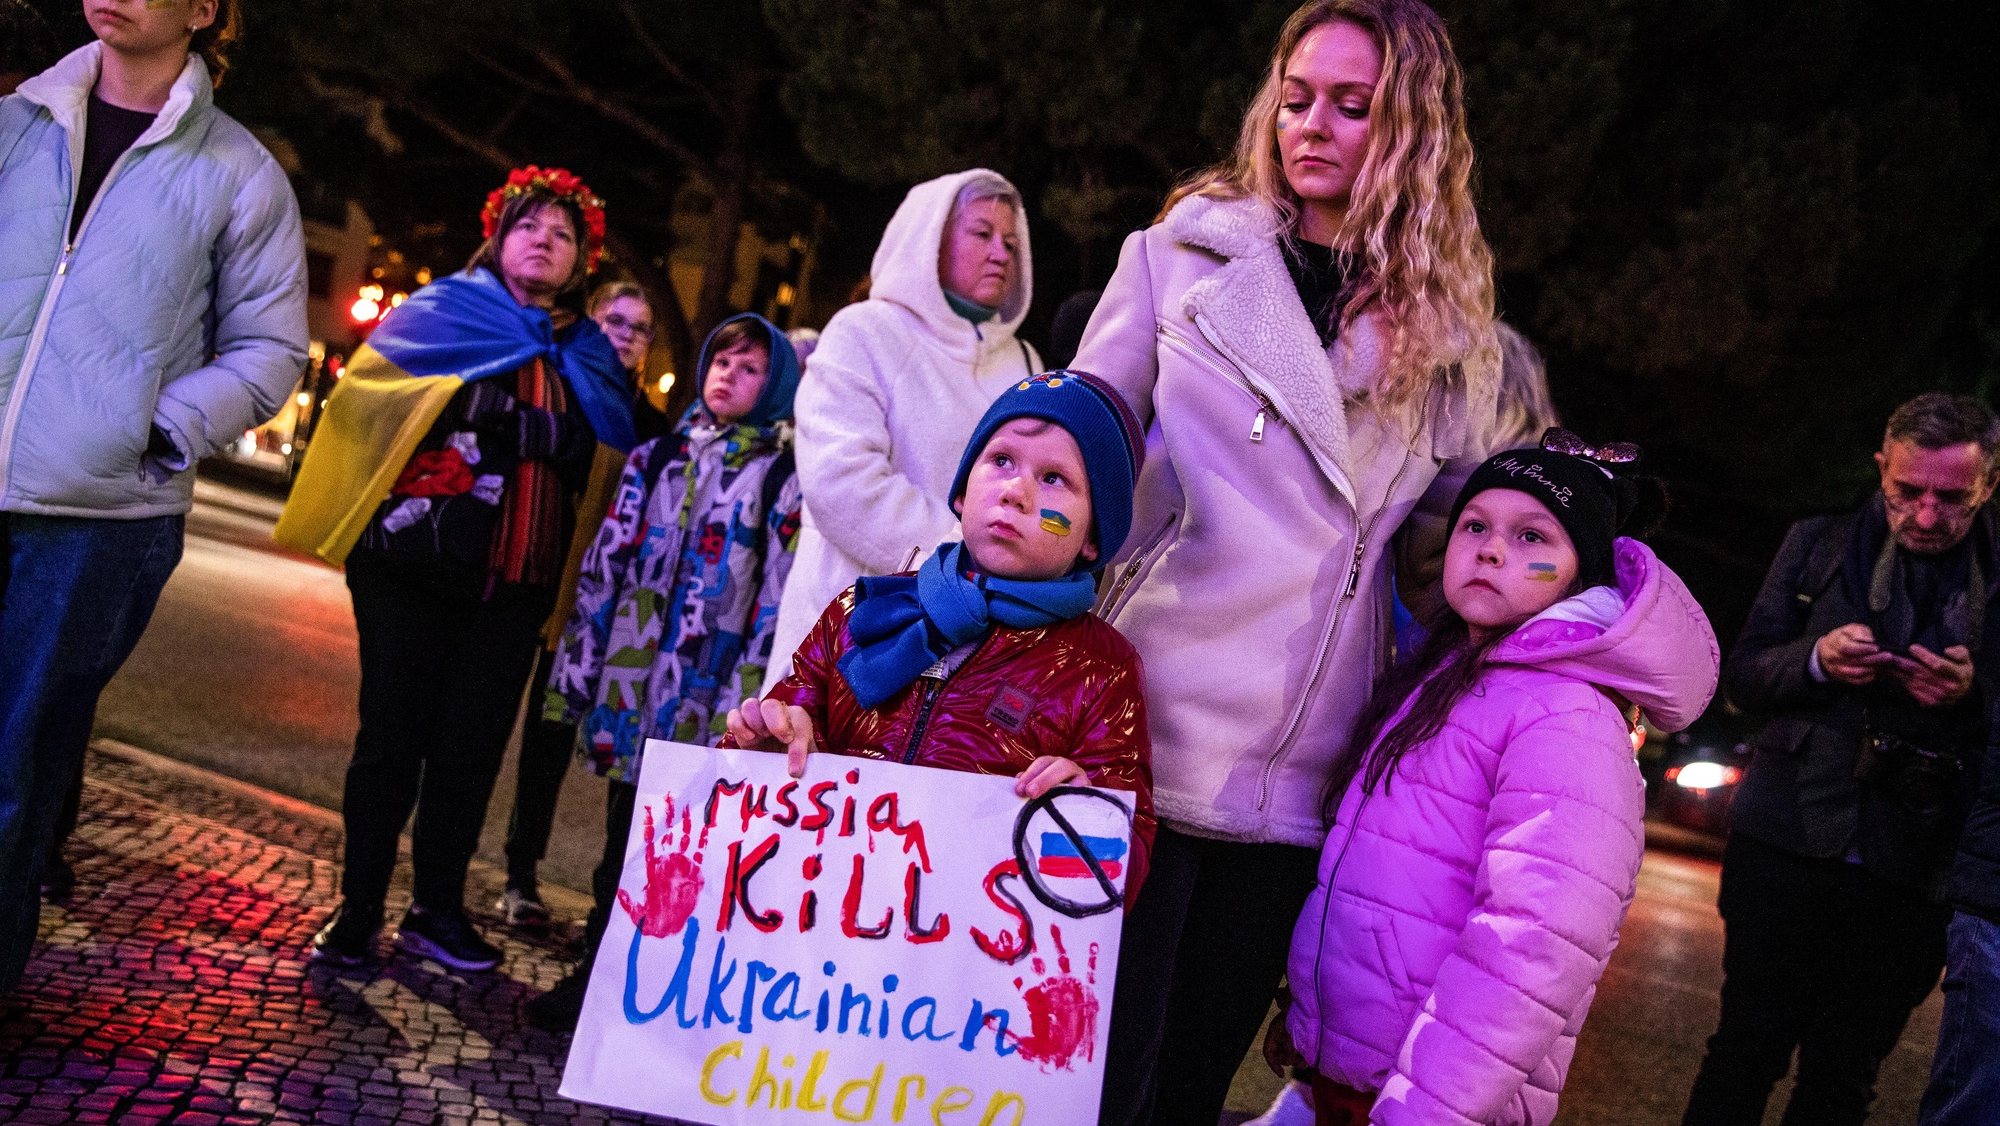 Uma crianças segura um cartaz com a frase “Russia Kills Ucraninian Children” durante uma vigília de um ano de guerra na Ucrânia, promovida pelo Núcleo da Associação dos Ucranianos em Portugal de Leiria, junto ao edifício da Câmara Municipal, 24 de fevereiro de 2023. Na ocasião é cantado o hino nacional da Ucrânia e é feito um minuto de silêncio em memória das vítimas. PAULO CUNHA/LUSA